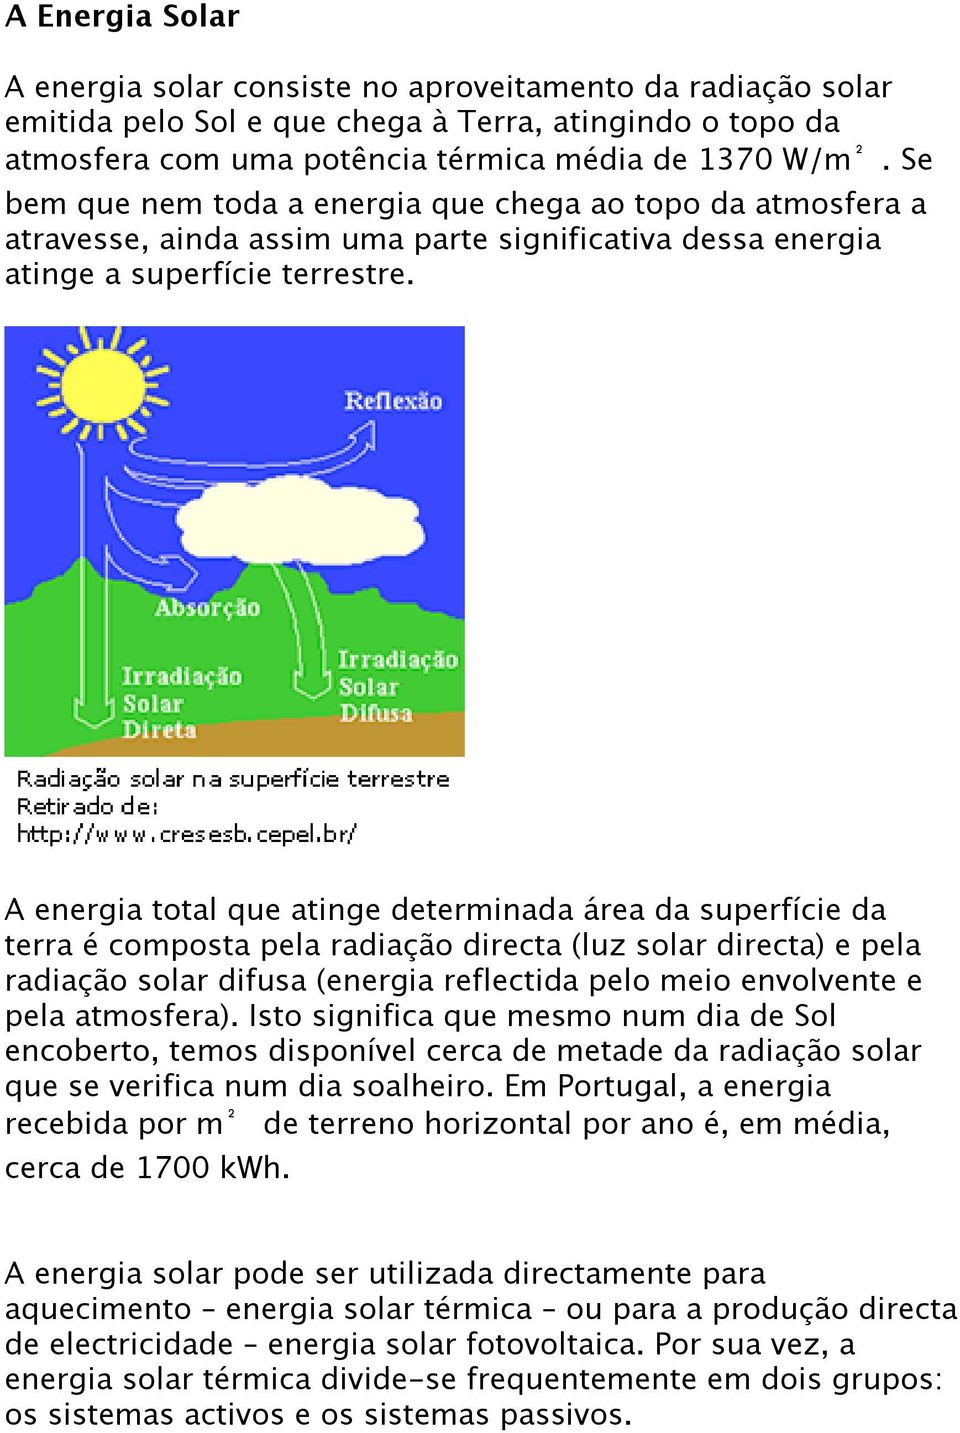 A energia total que atinge determinada área da superfície da terra é composta pela radiação directa (luz solar directa) e pela radiação solar difusa (energia reflectida pelo meio envolvente e pela